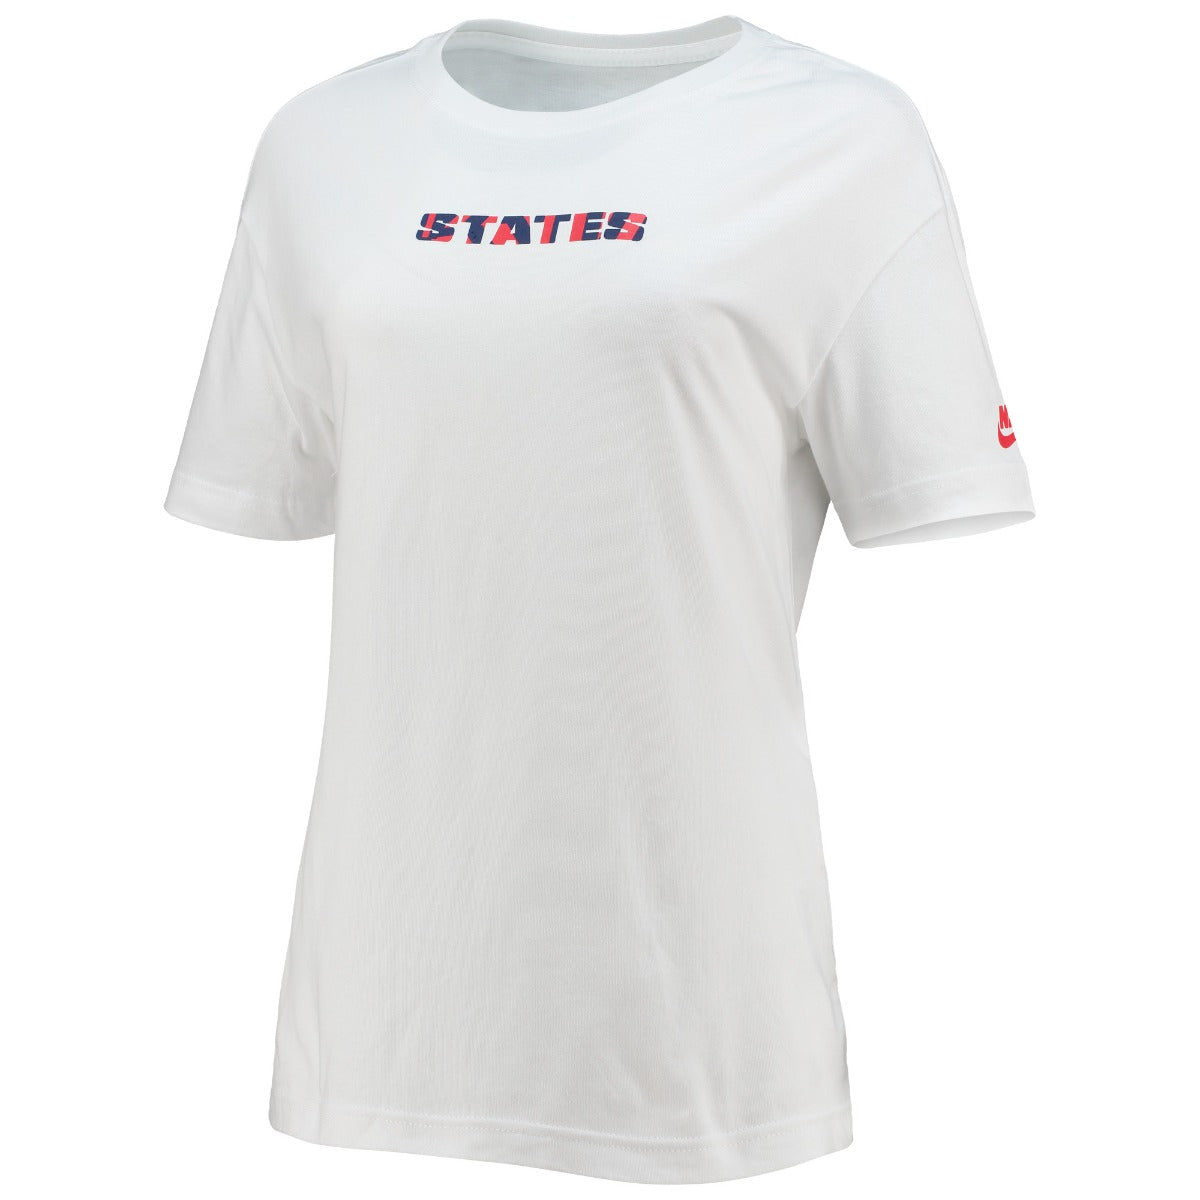 Nike 2021-22 USA Women States Voice Tee - White (Front)